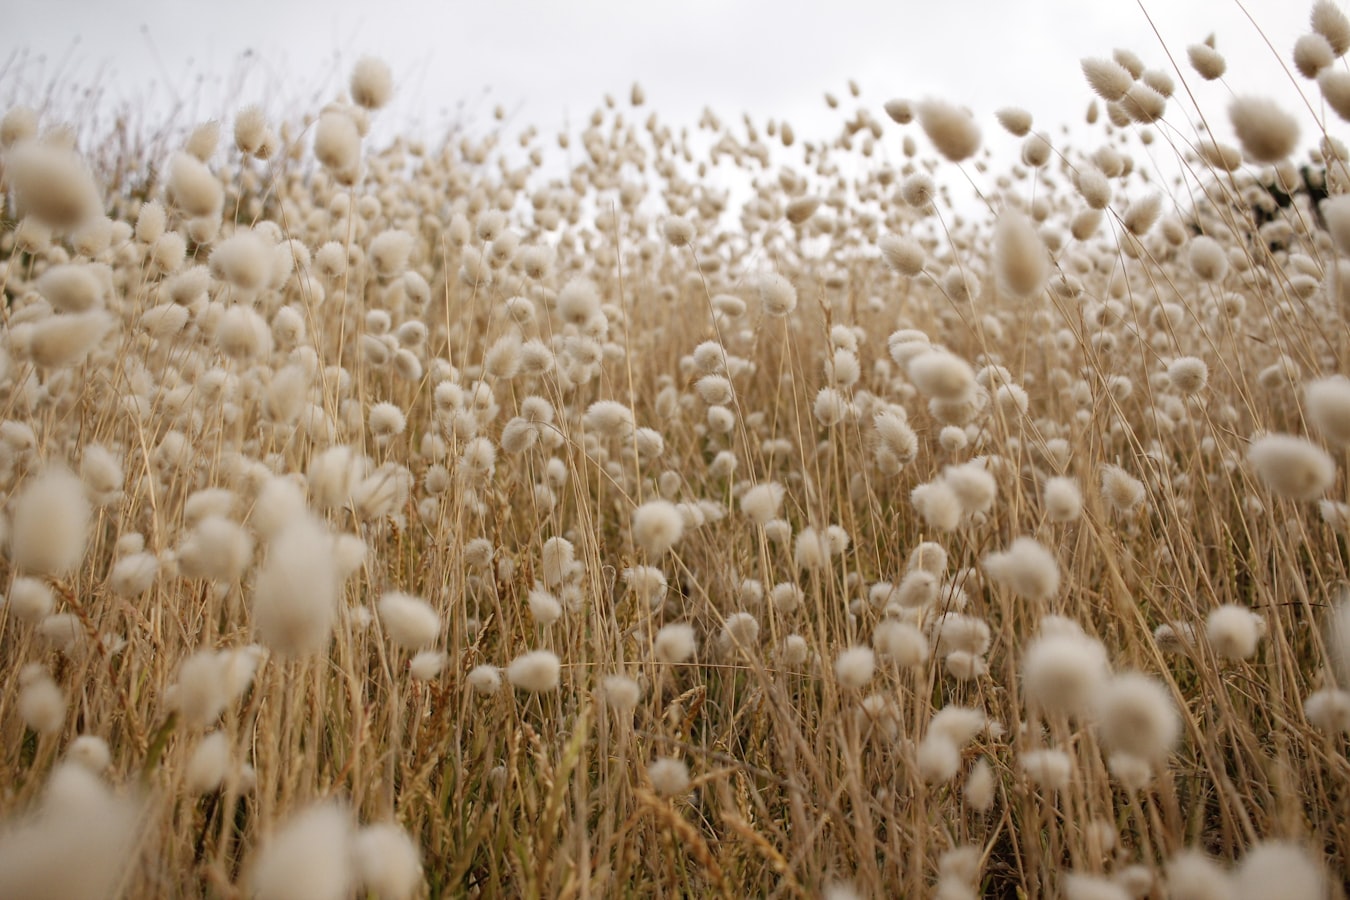 Cotton fields, 